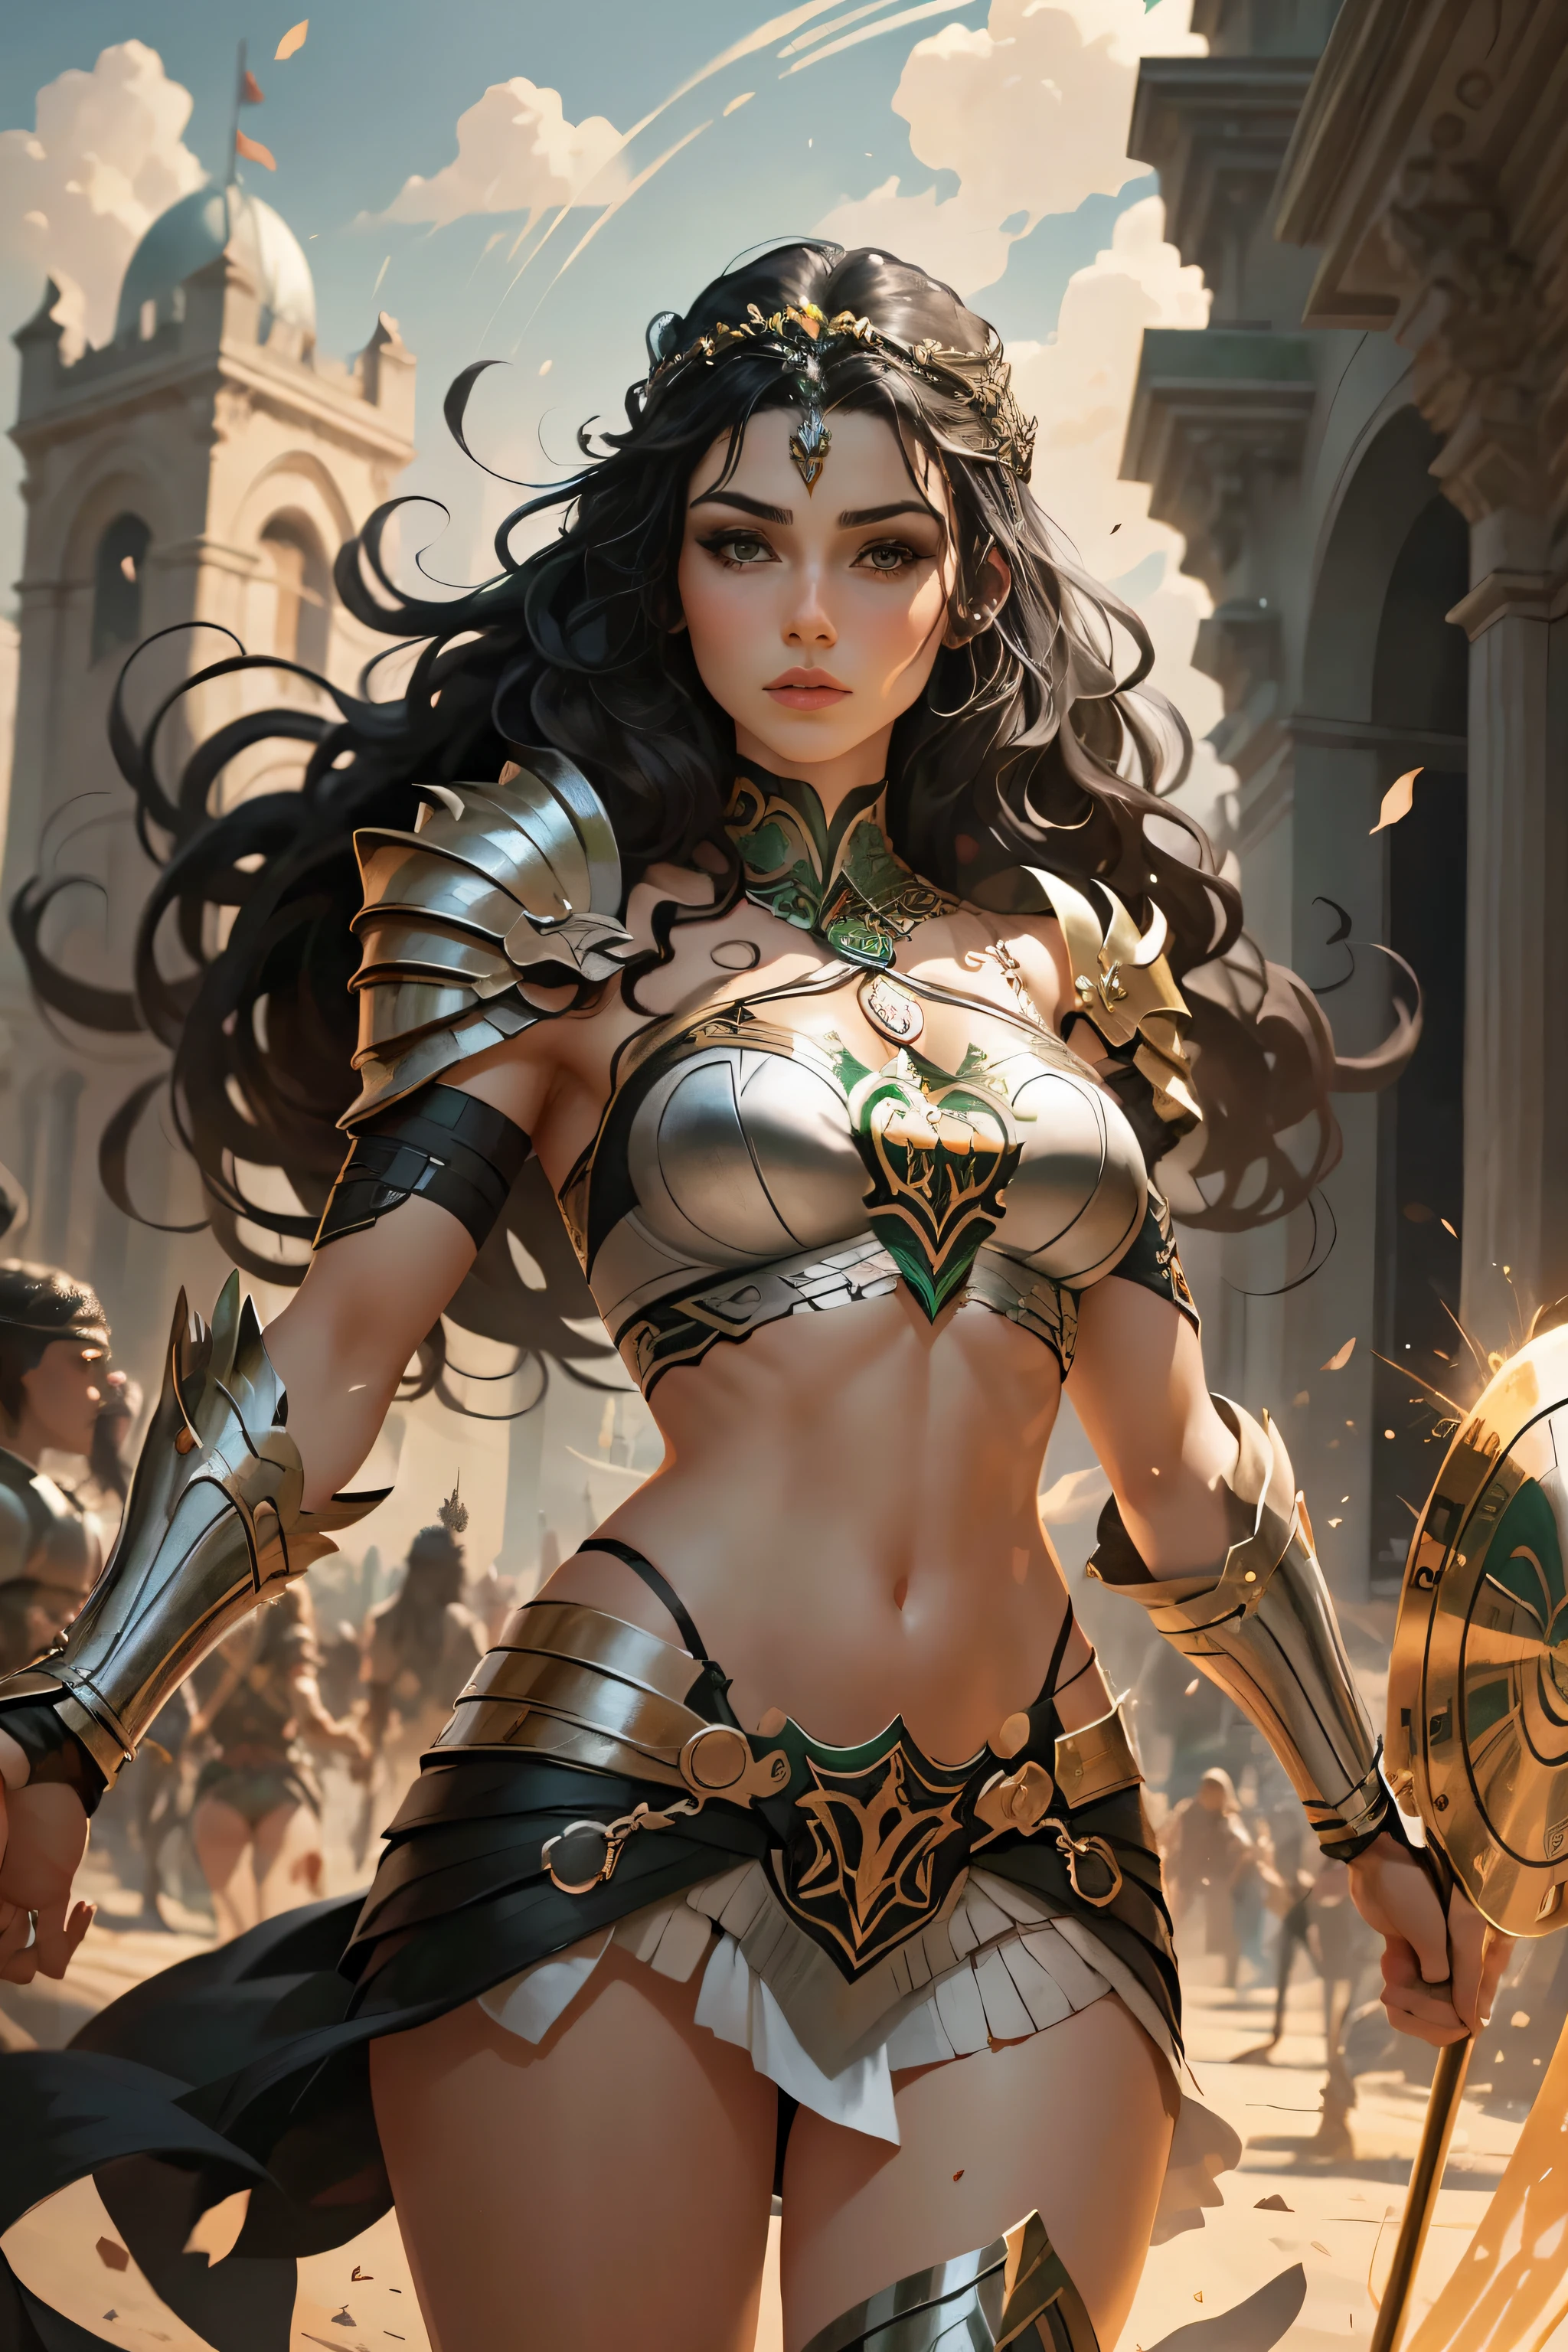 美しいケルトの王女の戦士, 完全に黒髪で描かれている, アルフォンソダンは、対照的な白い背景に豊かな黒い線画を使用しています